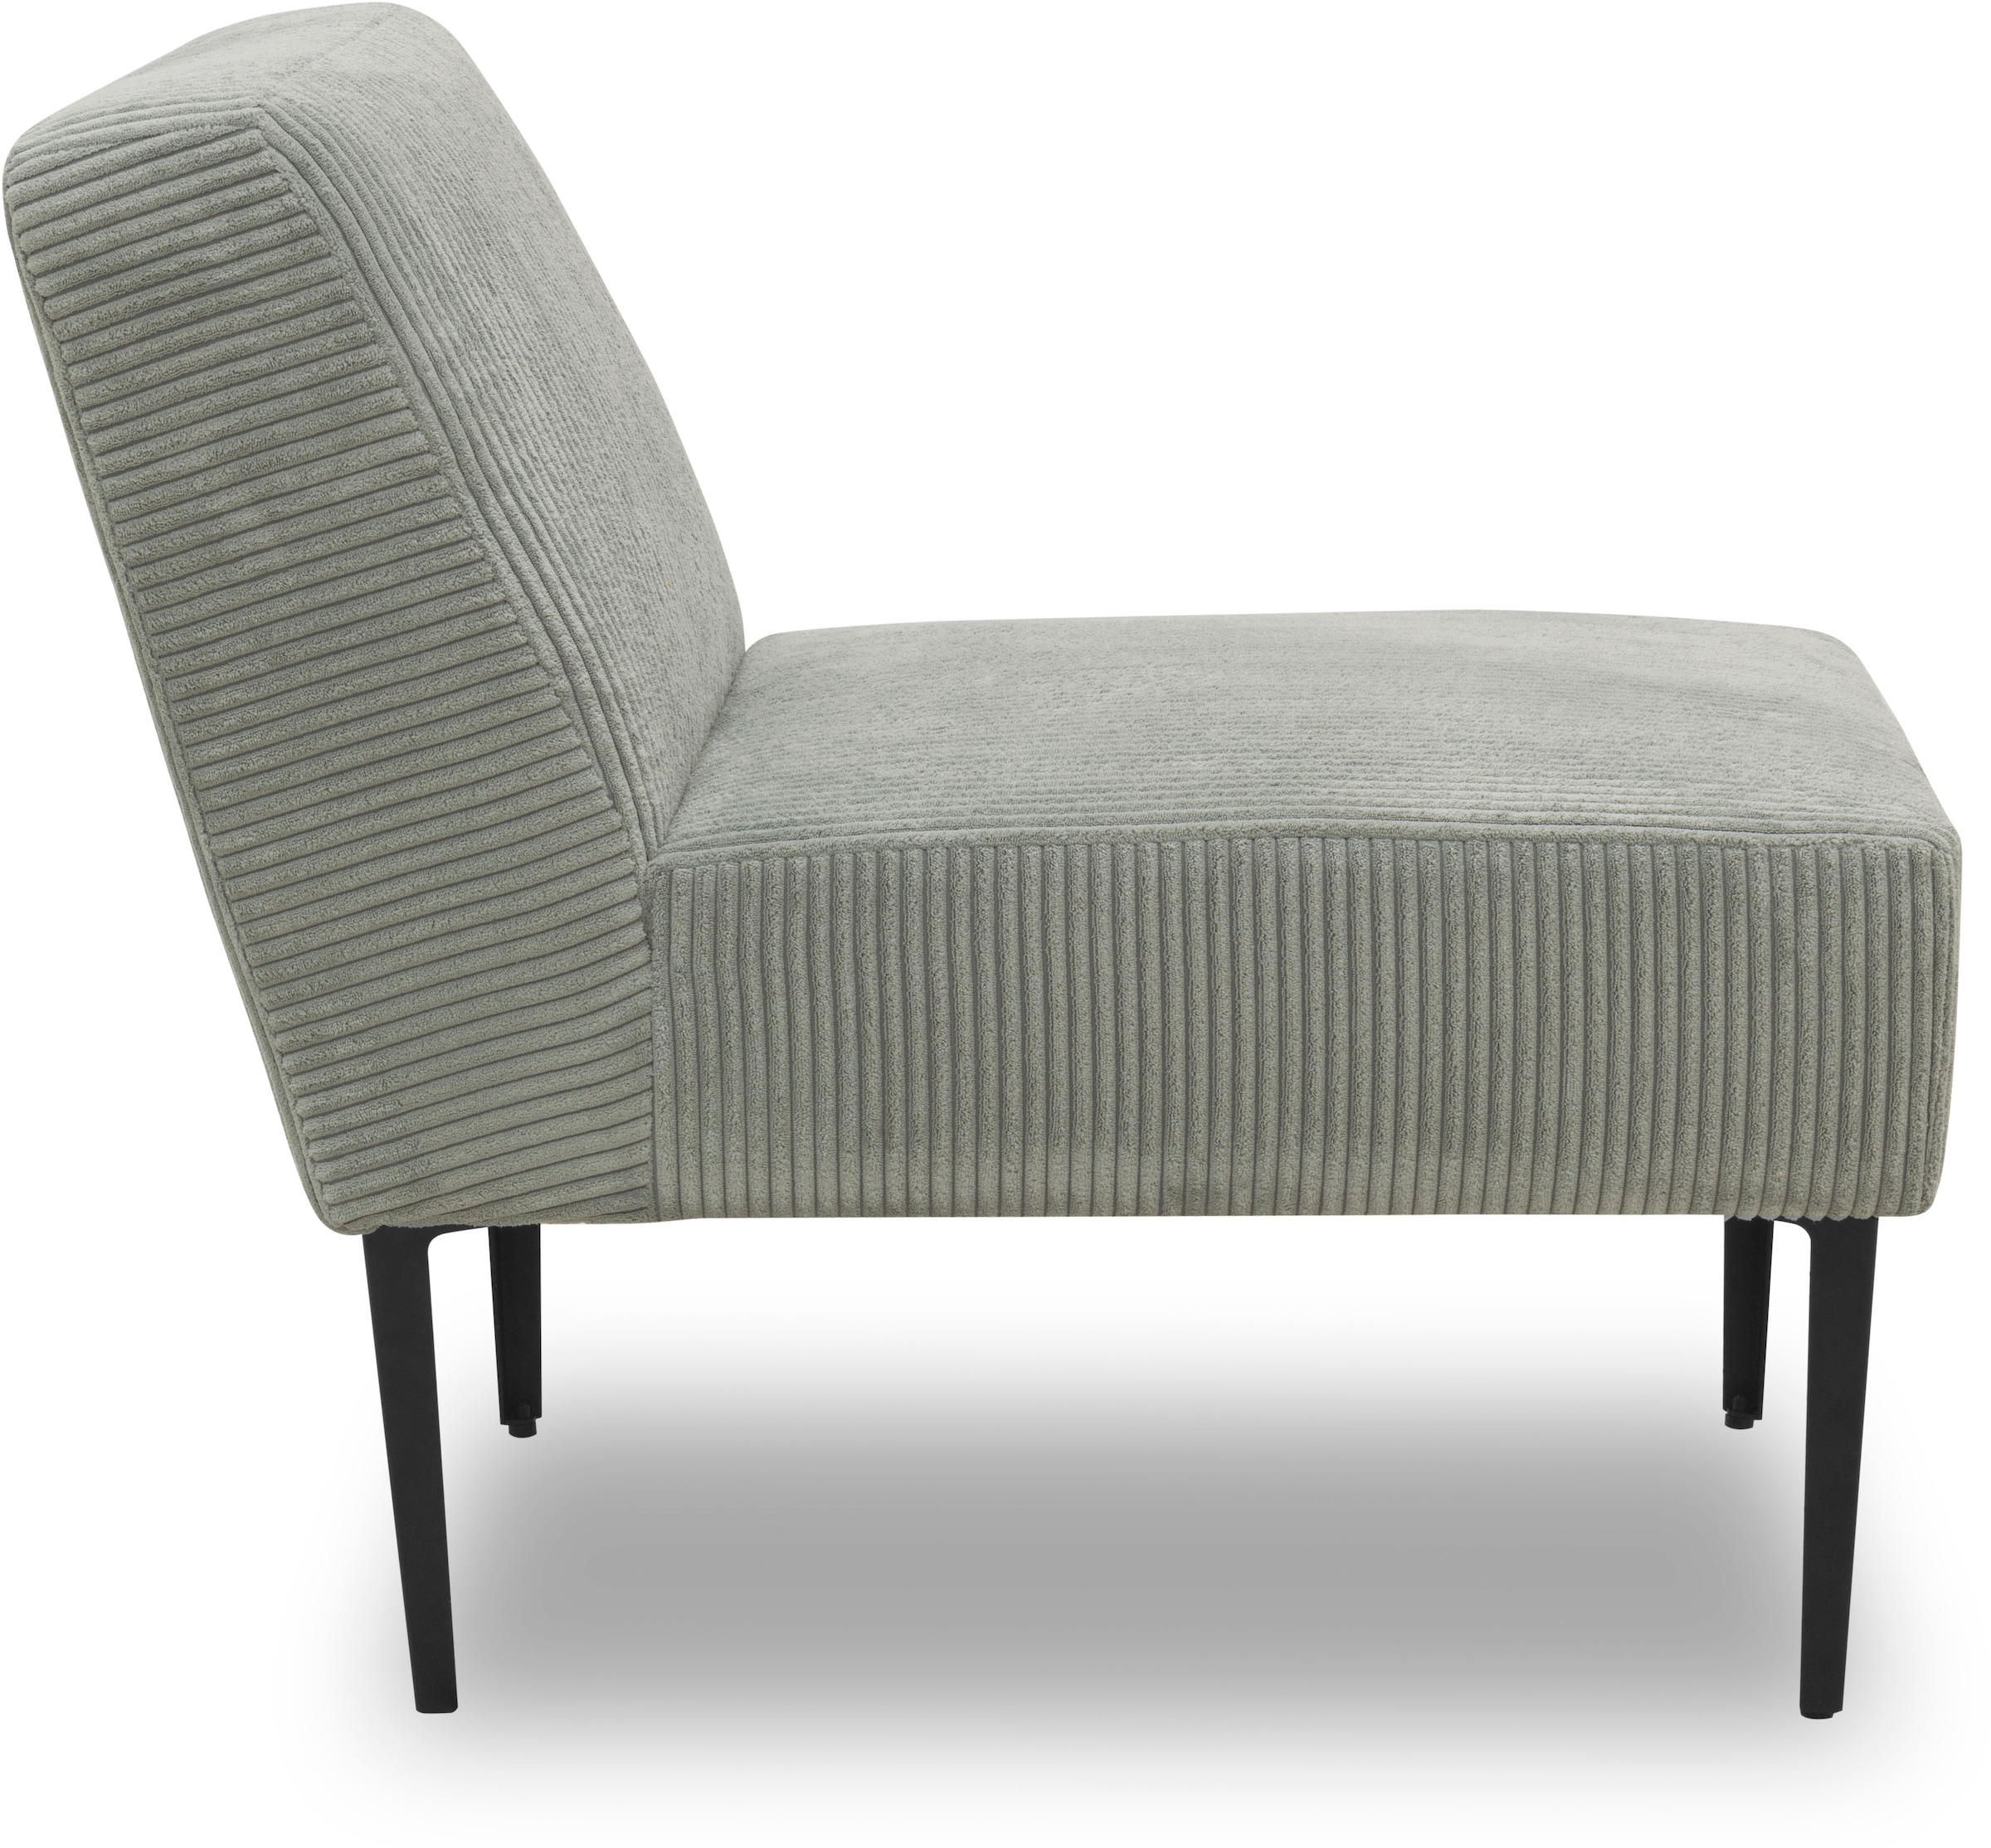 DOMO collection Sessel »700010 Lieferzeit nur 2 Wochen, auch einzeln stellbar«, für individuelle Zusammenstellung eines persönlichen Sofas, Cord-Bezug